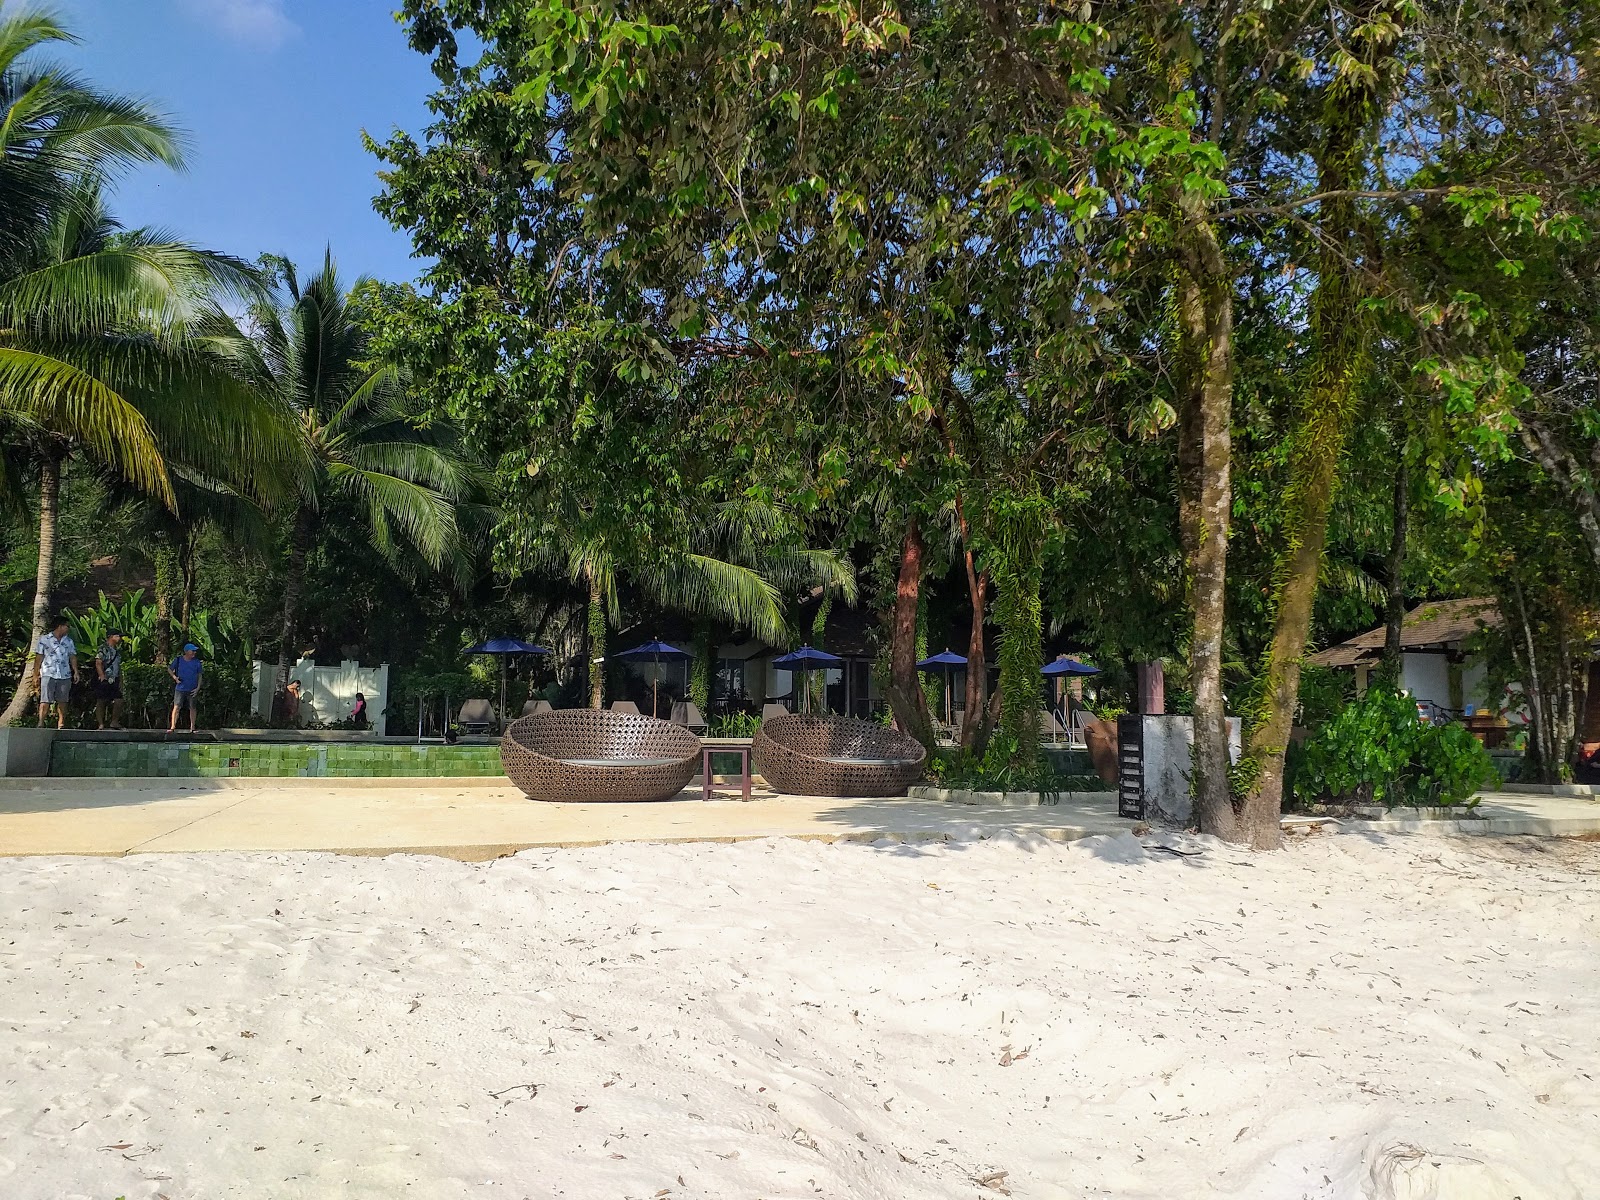 Φωτογραφία του Centara Chaan Talay Beach - δημοφιλές μέρος μεταξύ λάτρεις της χαλάρωσης